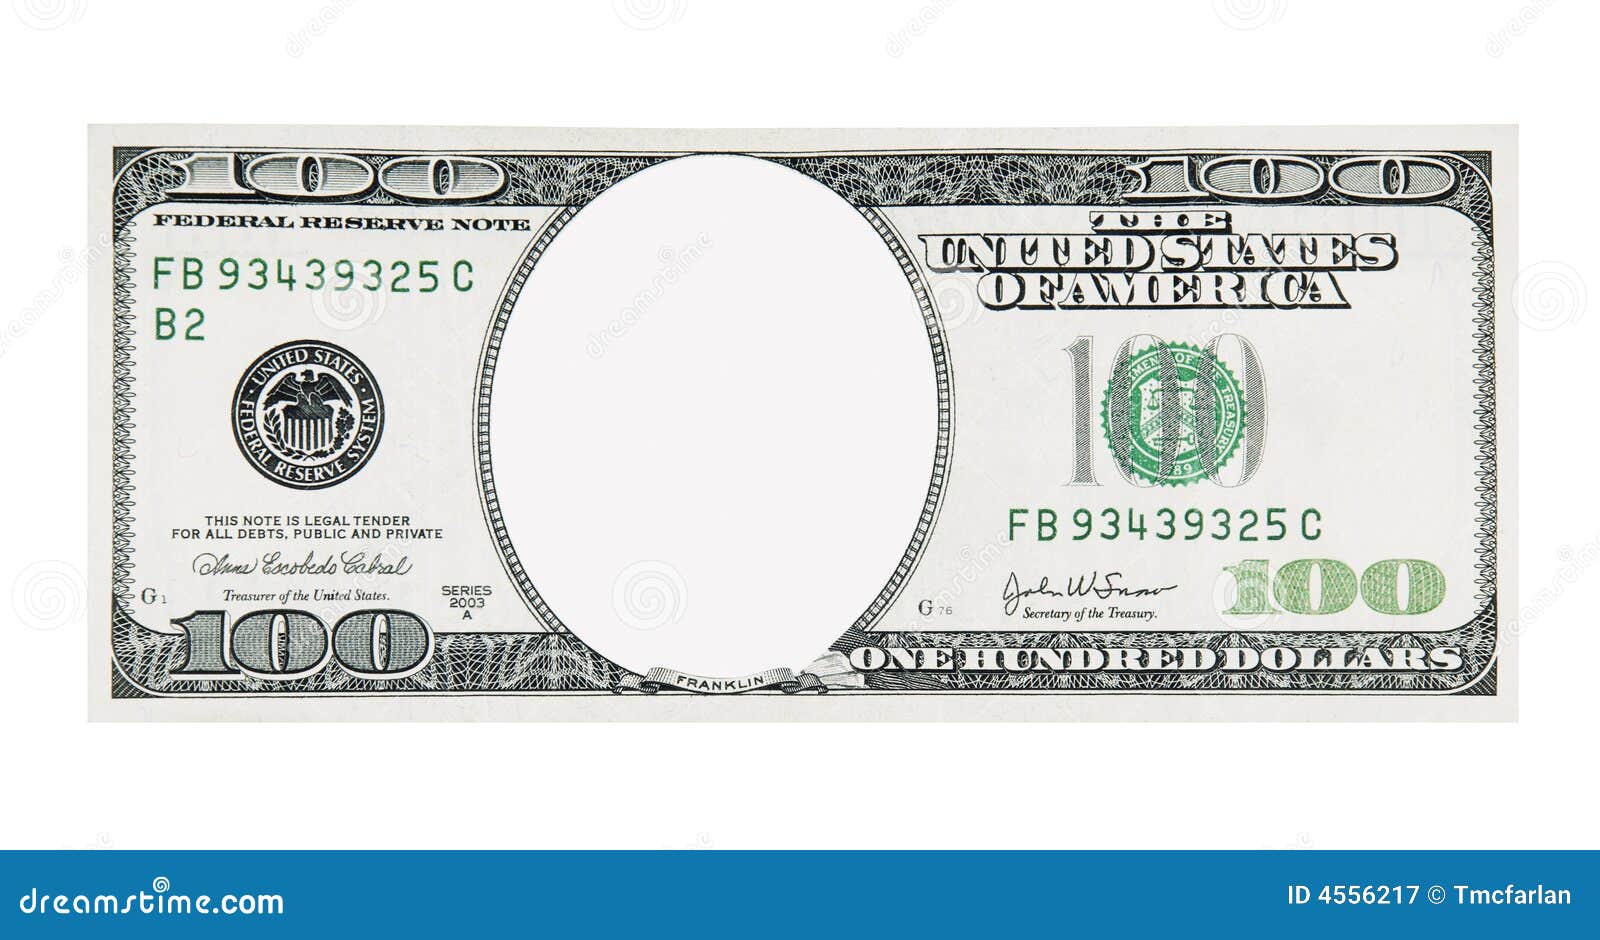 100 dollar bill front no face